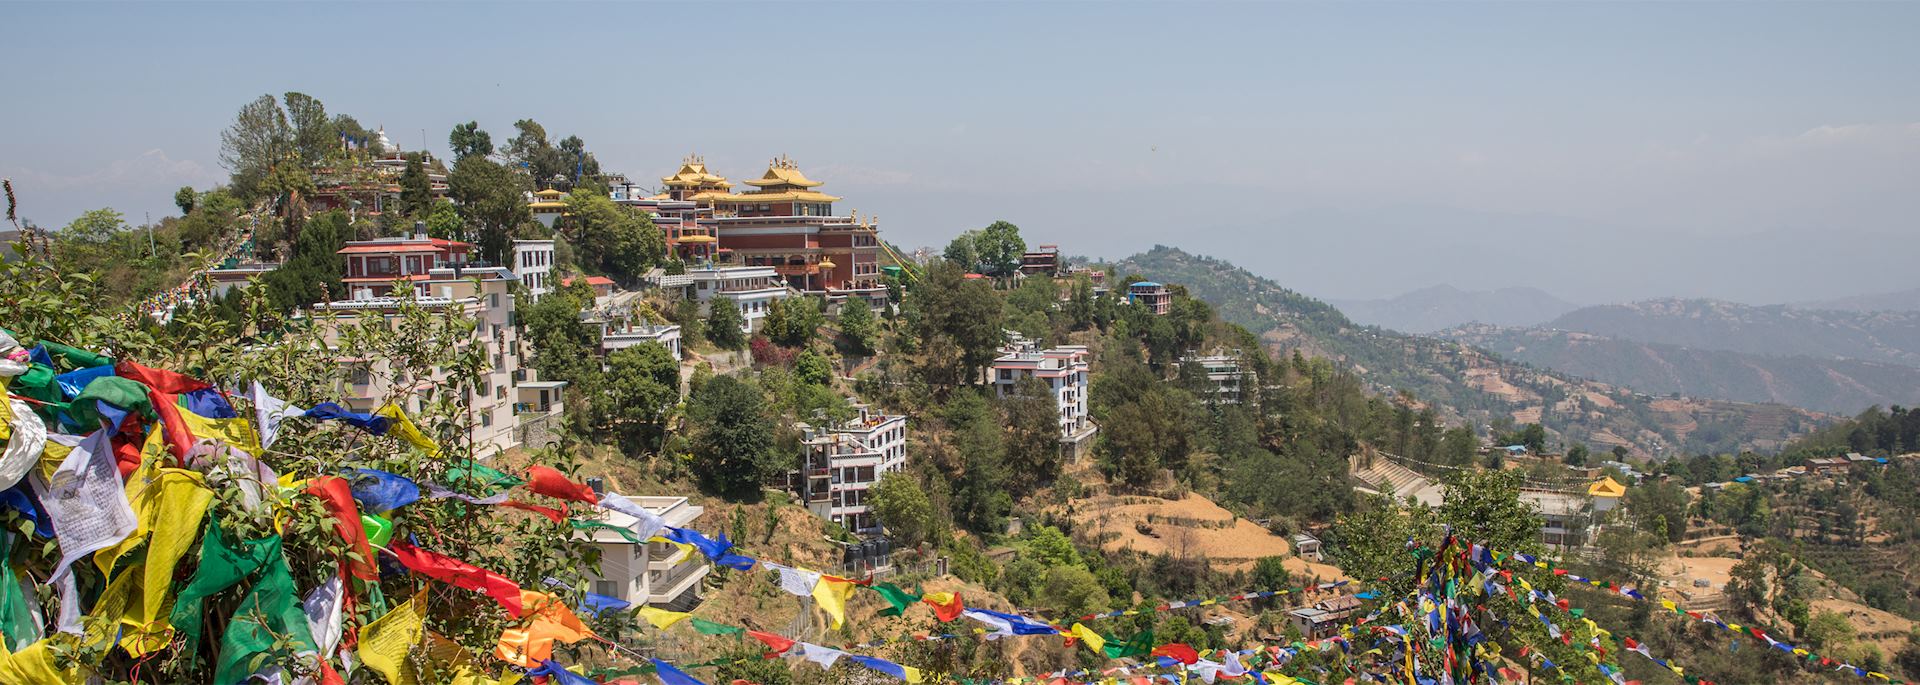 Namobuddha, Nepal